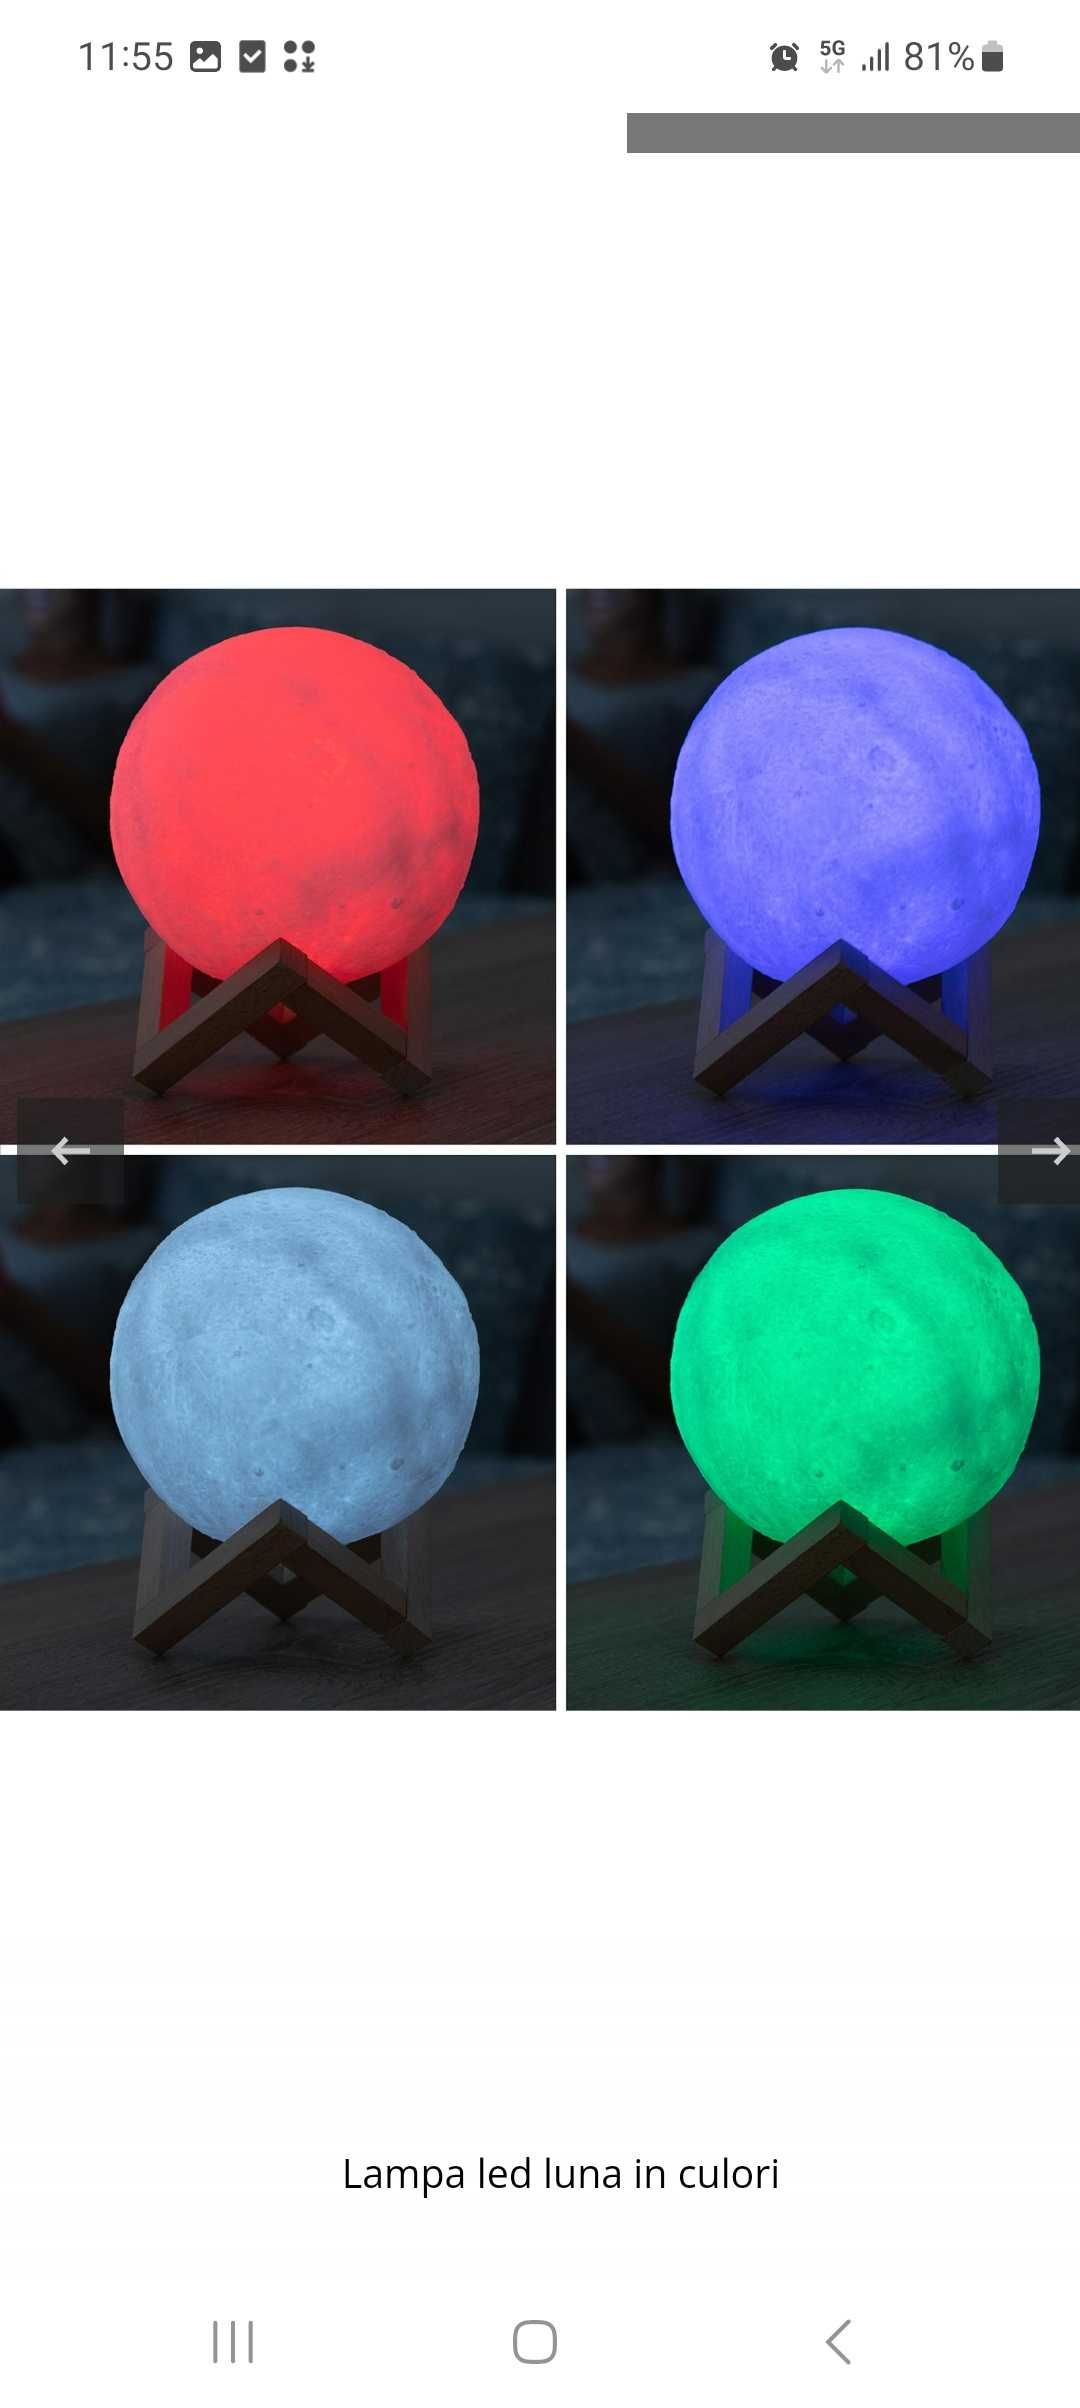 Lampa Luna in culori